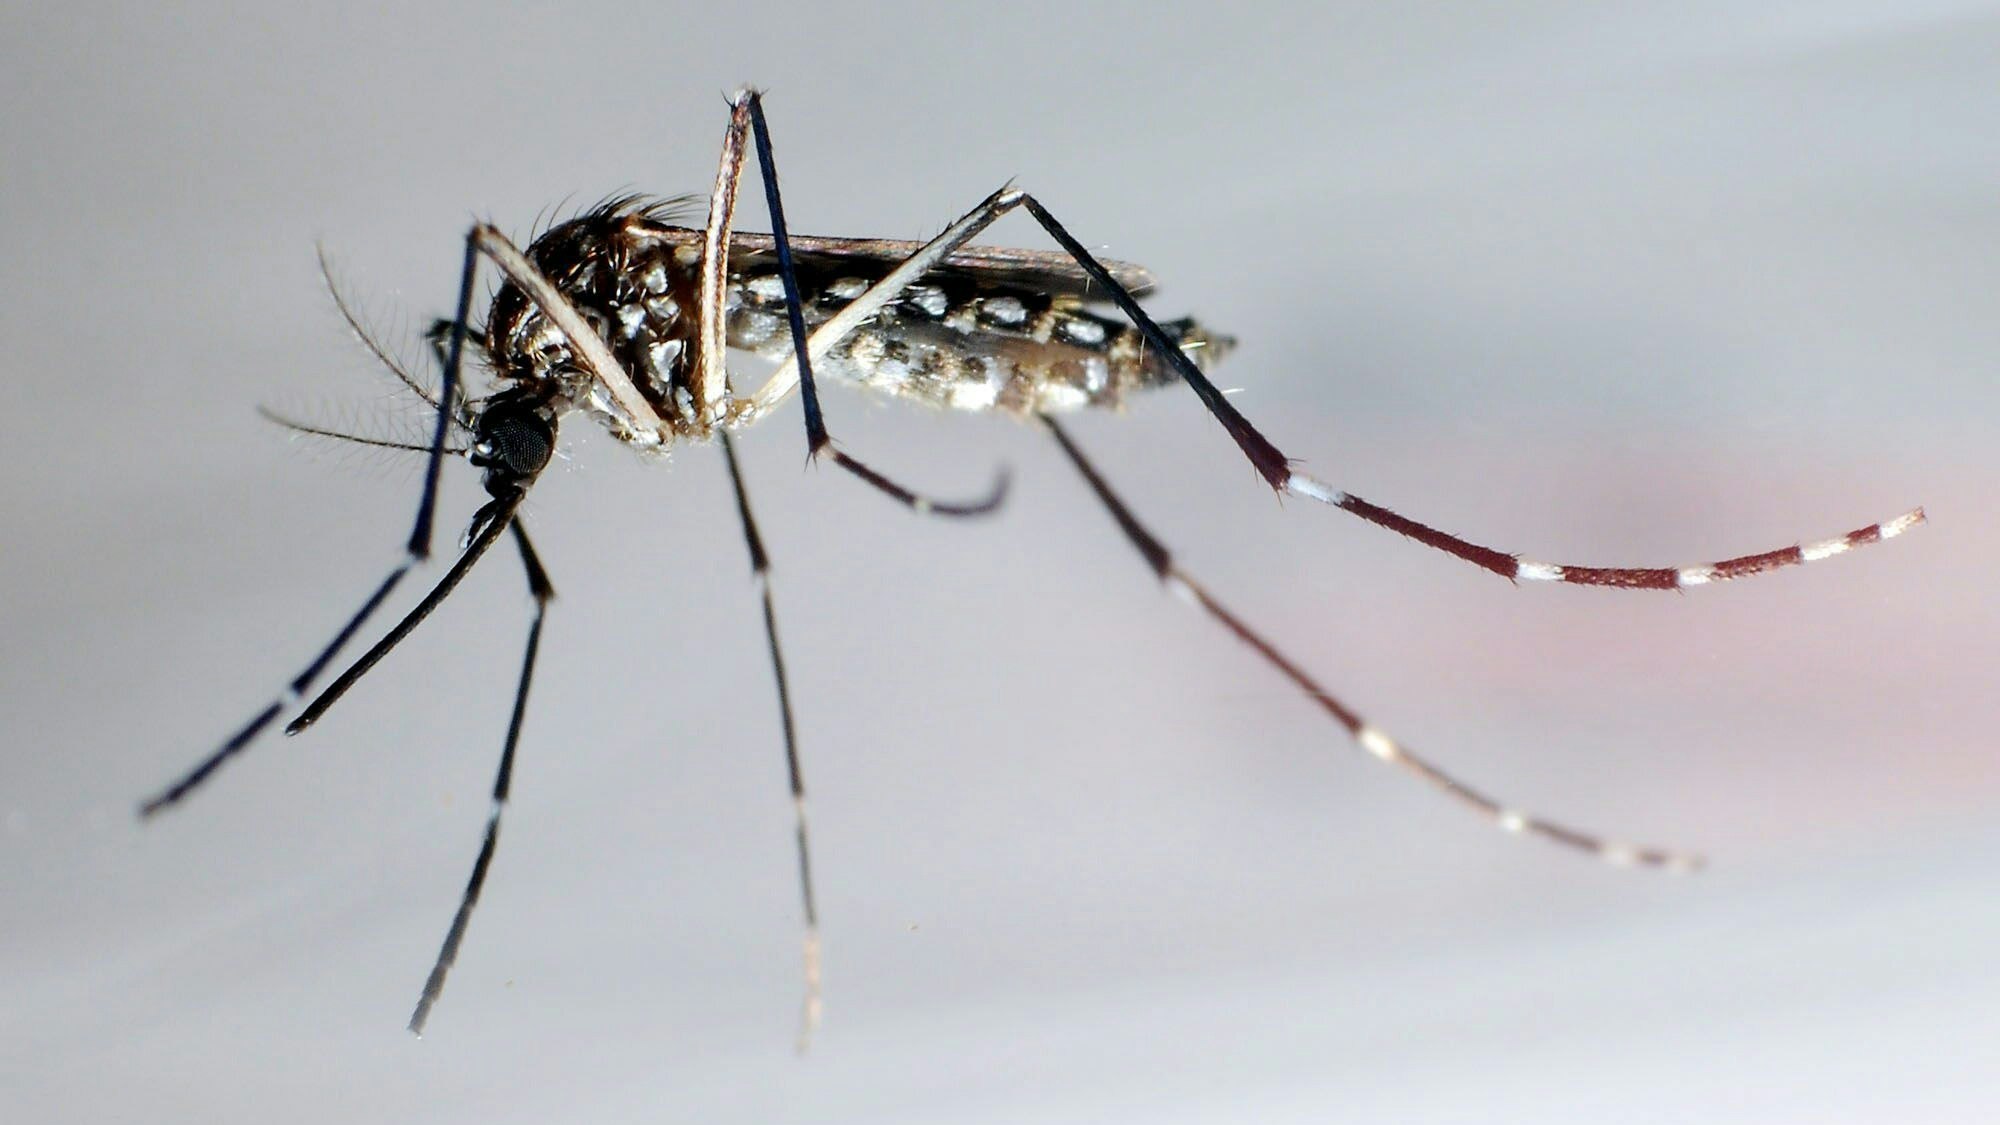 Gelbfiebermücken (Aedes aegypti) gelten als hauptverantwortlich für die Übertragung des Dengue-Fiebers.